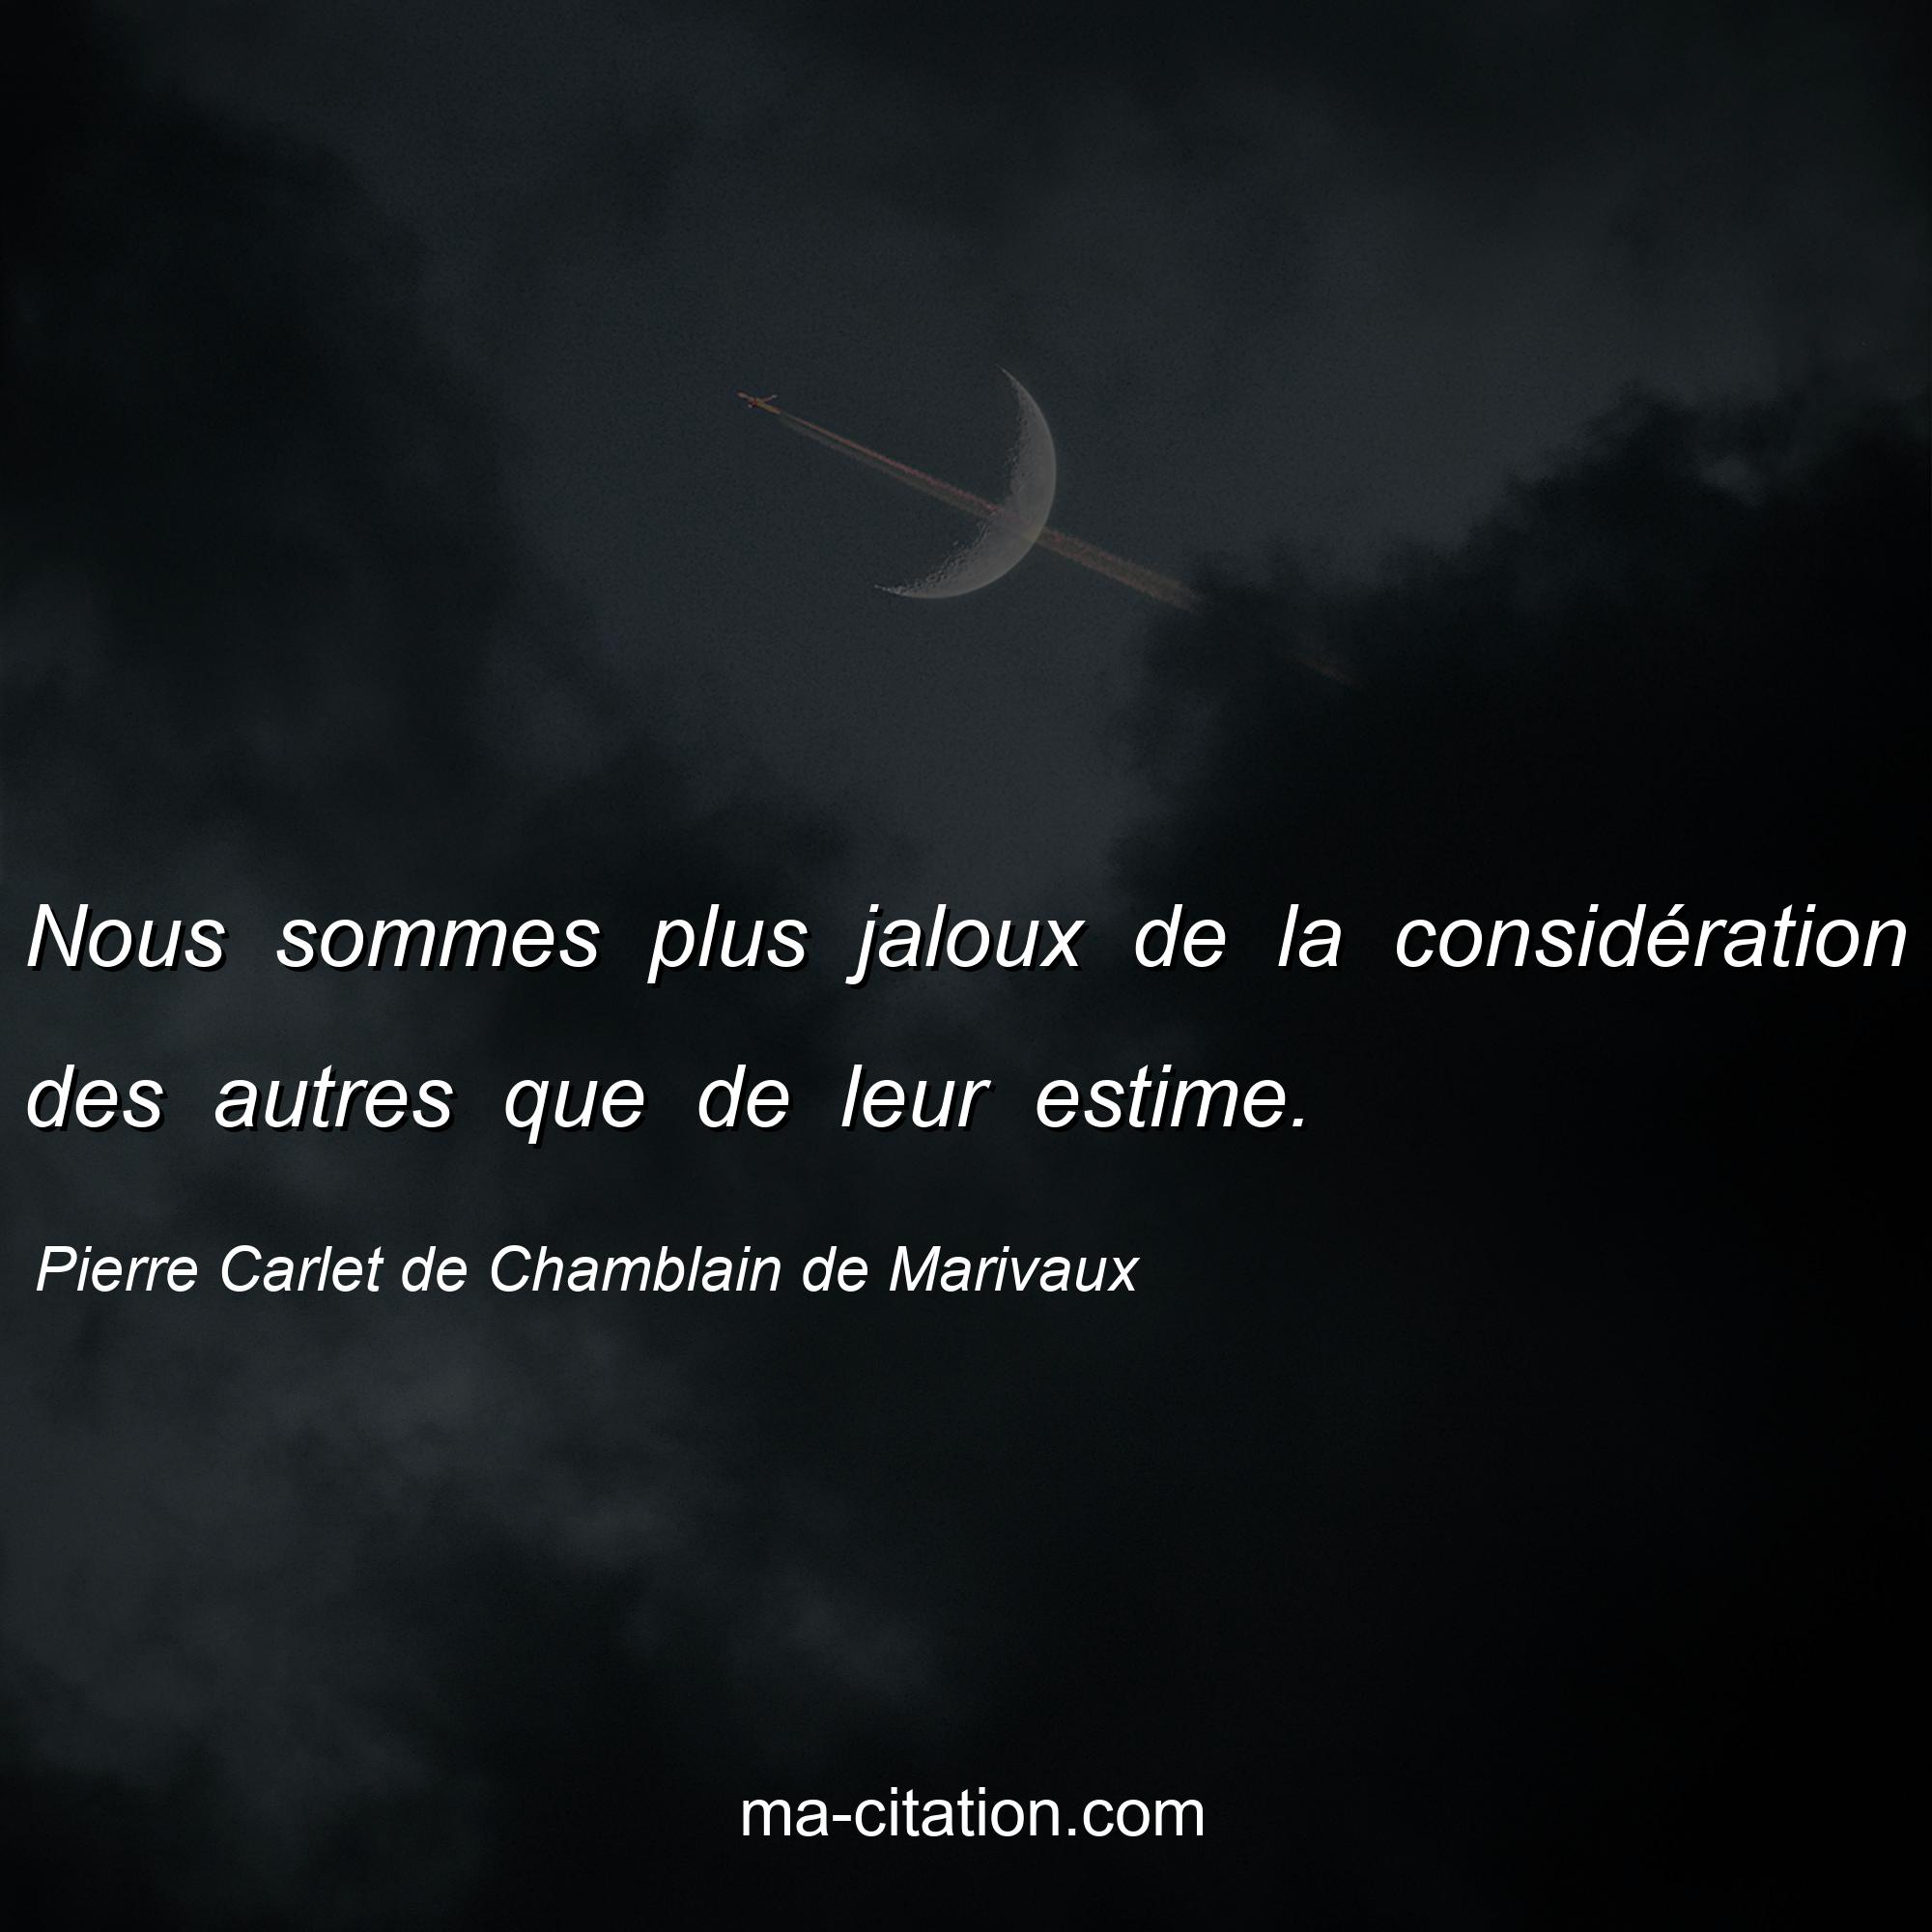 Pierre Carlet de Chamblain de Marivaux : Nous sommes plus jaloux de la considération des autres que de leur estime.